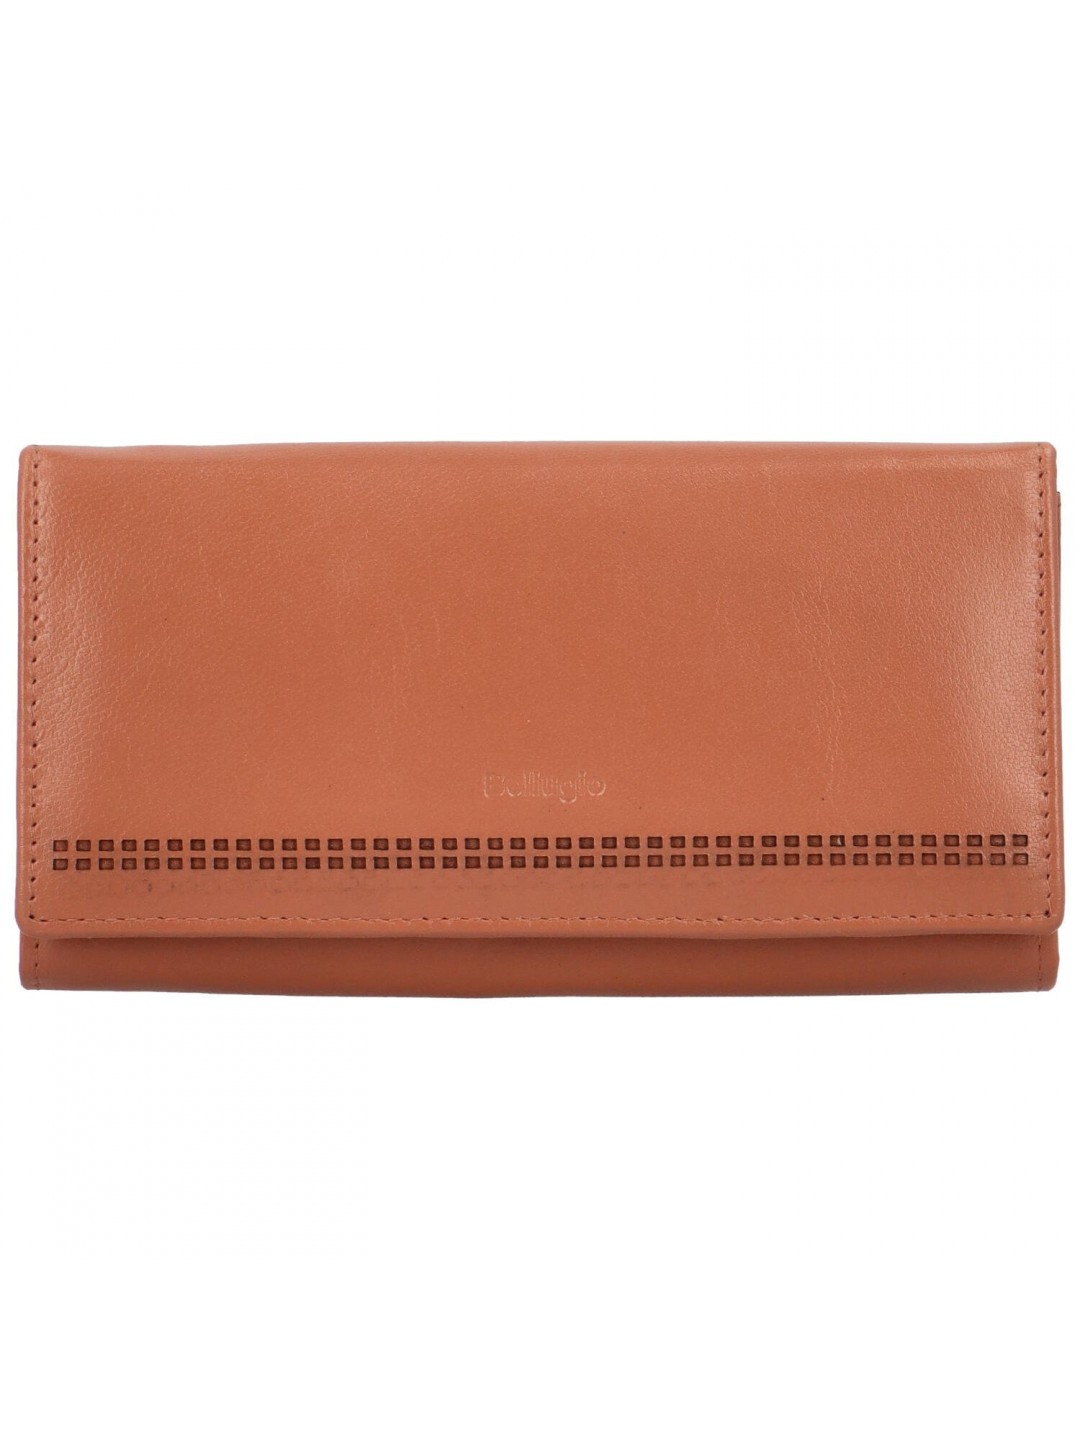 Trendy velká dámská peněženka Bellugio Loprina oranžová